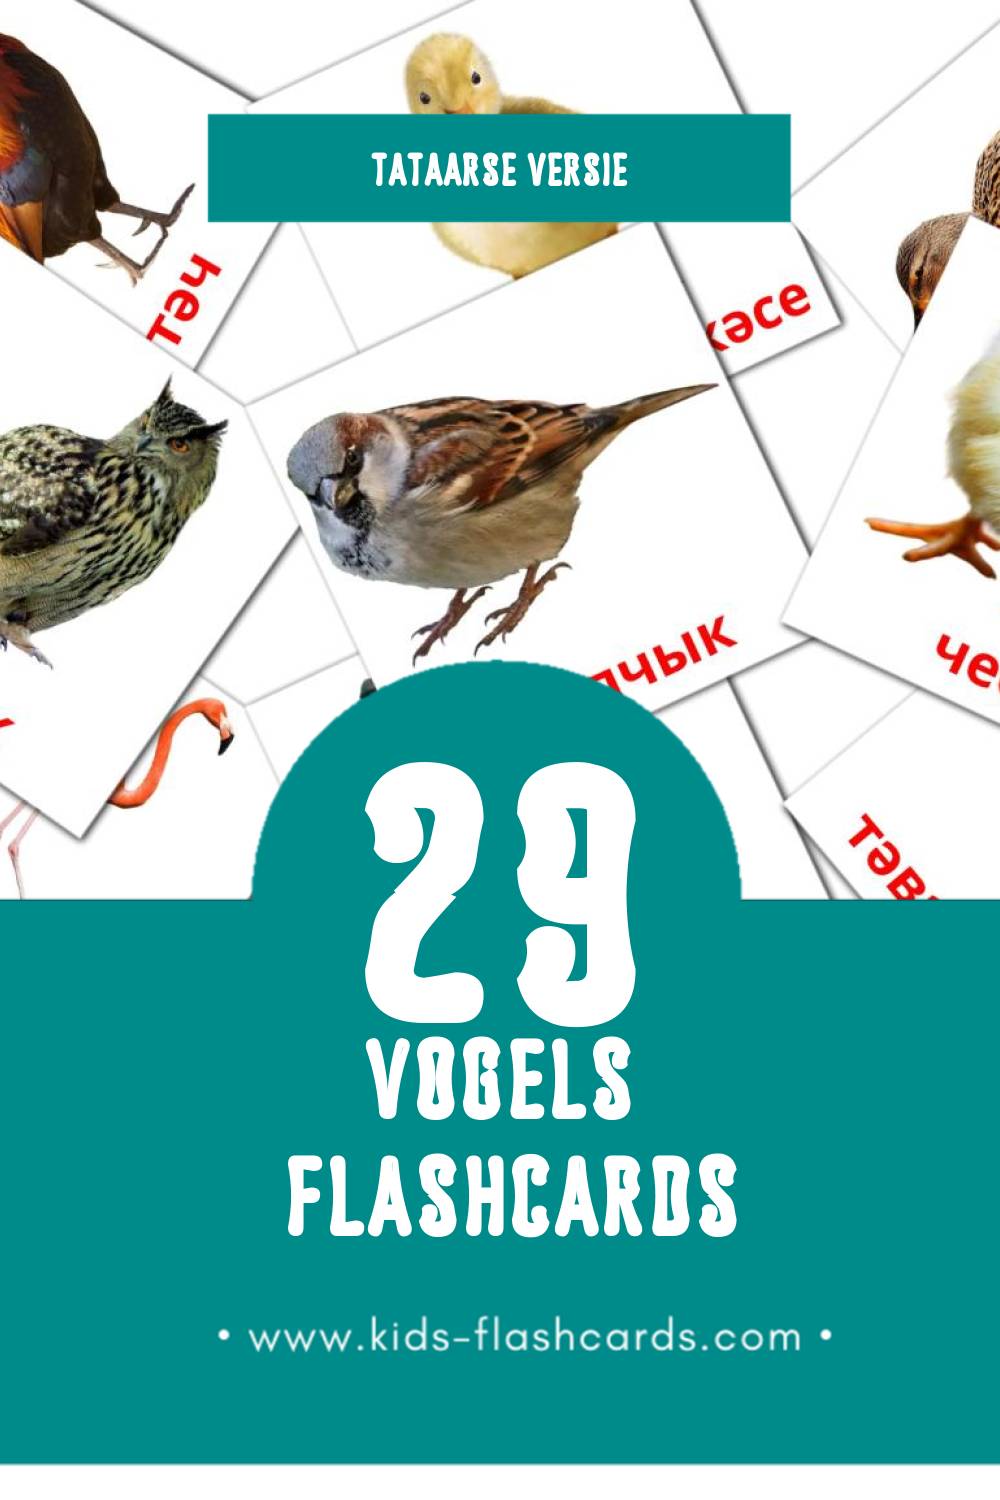 Visuele Кош-корт Flashcards voor Kleuters (29 kaarten in het Tataars)